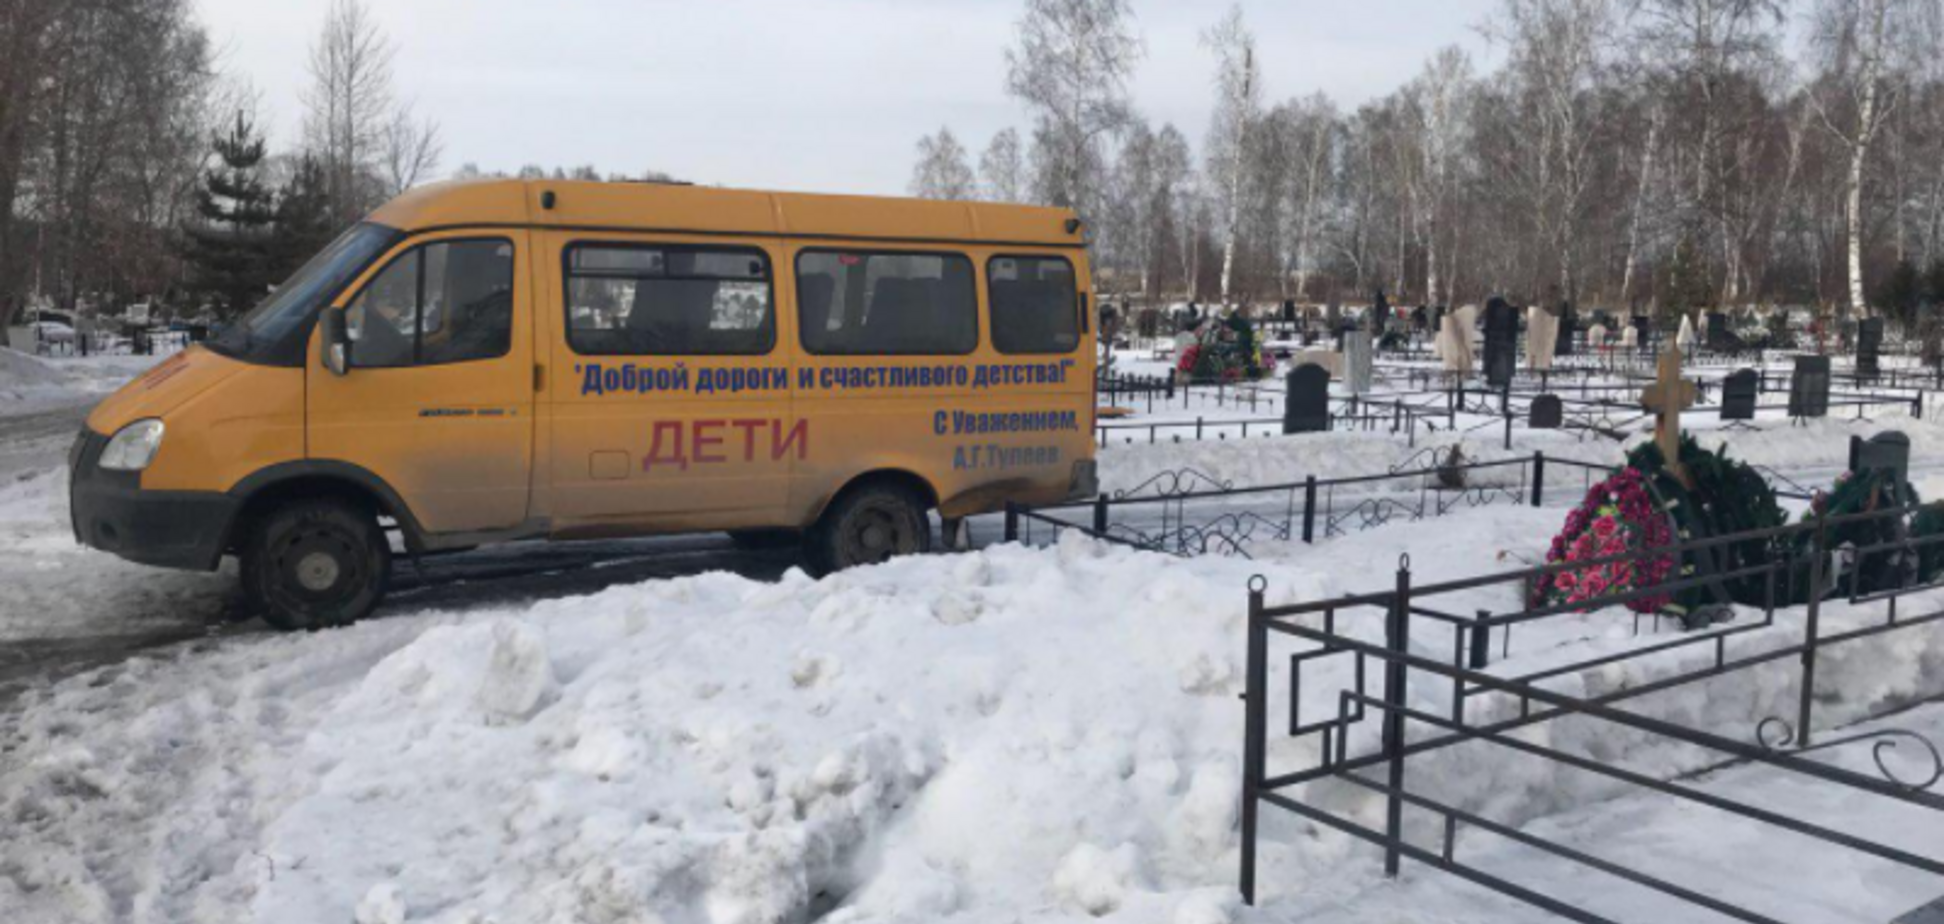 Автобус на кладбище Кемерово